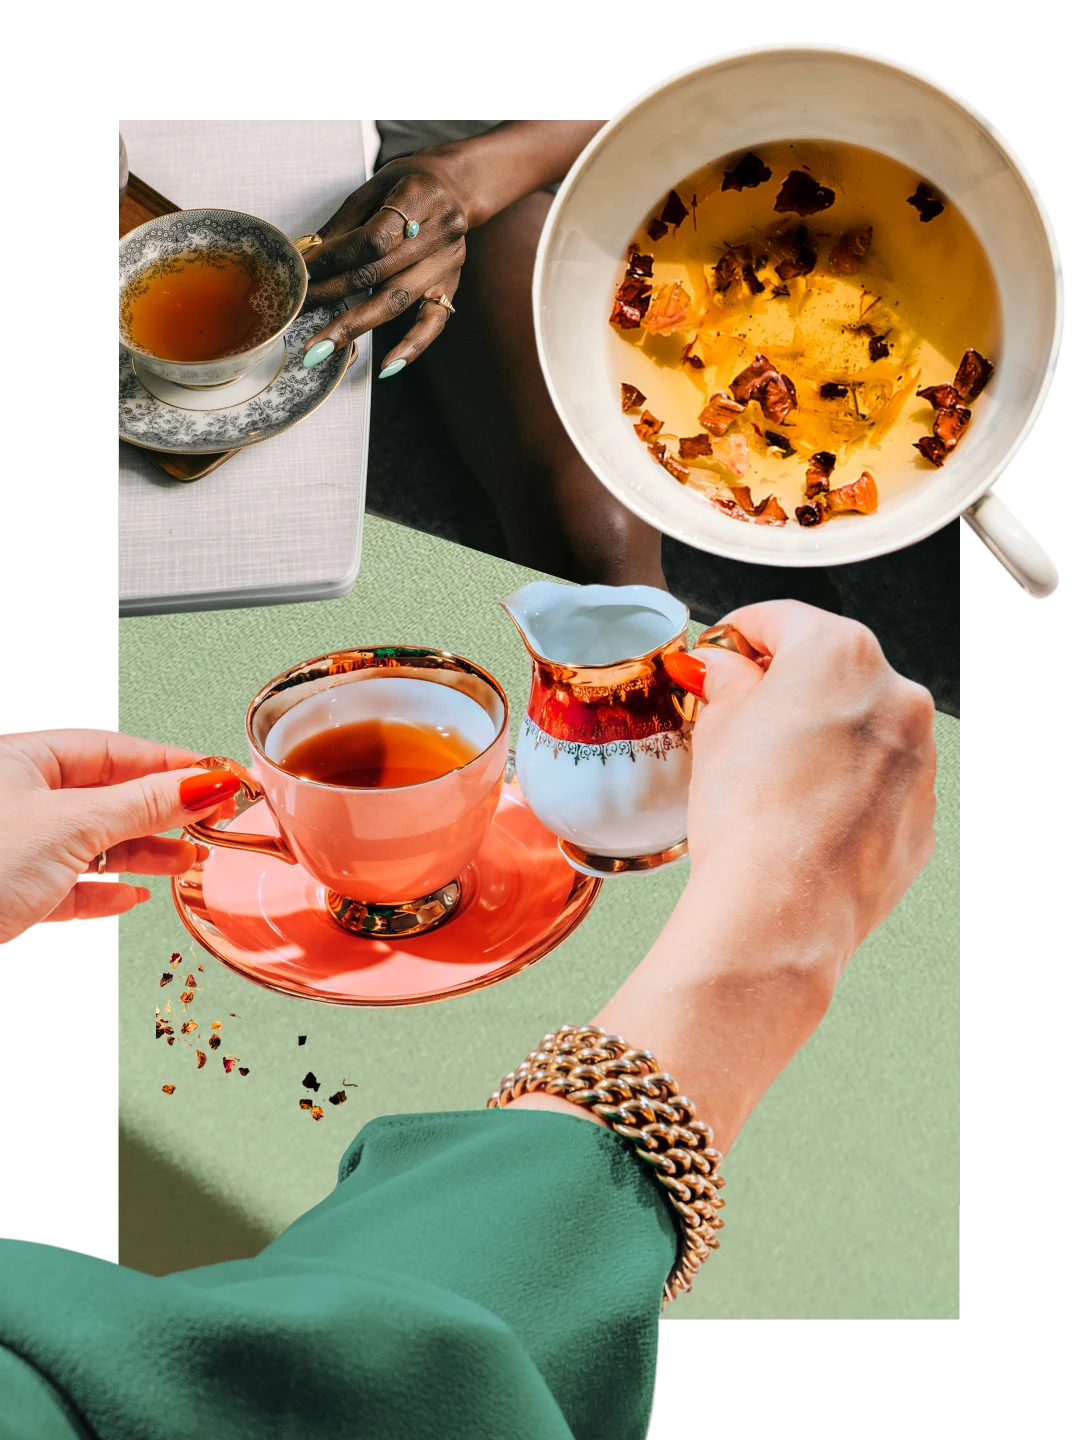 Collage de tasses remplies de thé ambré sur un fond vert clair. Main d’une personne blanche en manche verte soulevant un pot à crème avec un bord rouge. Main d’une personne noire tenant l’anse d’une tasse à thé ancienne.
